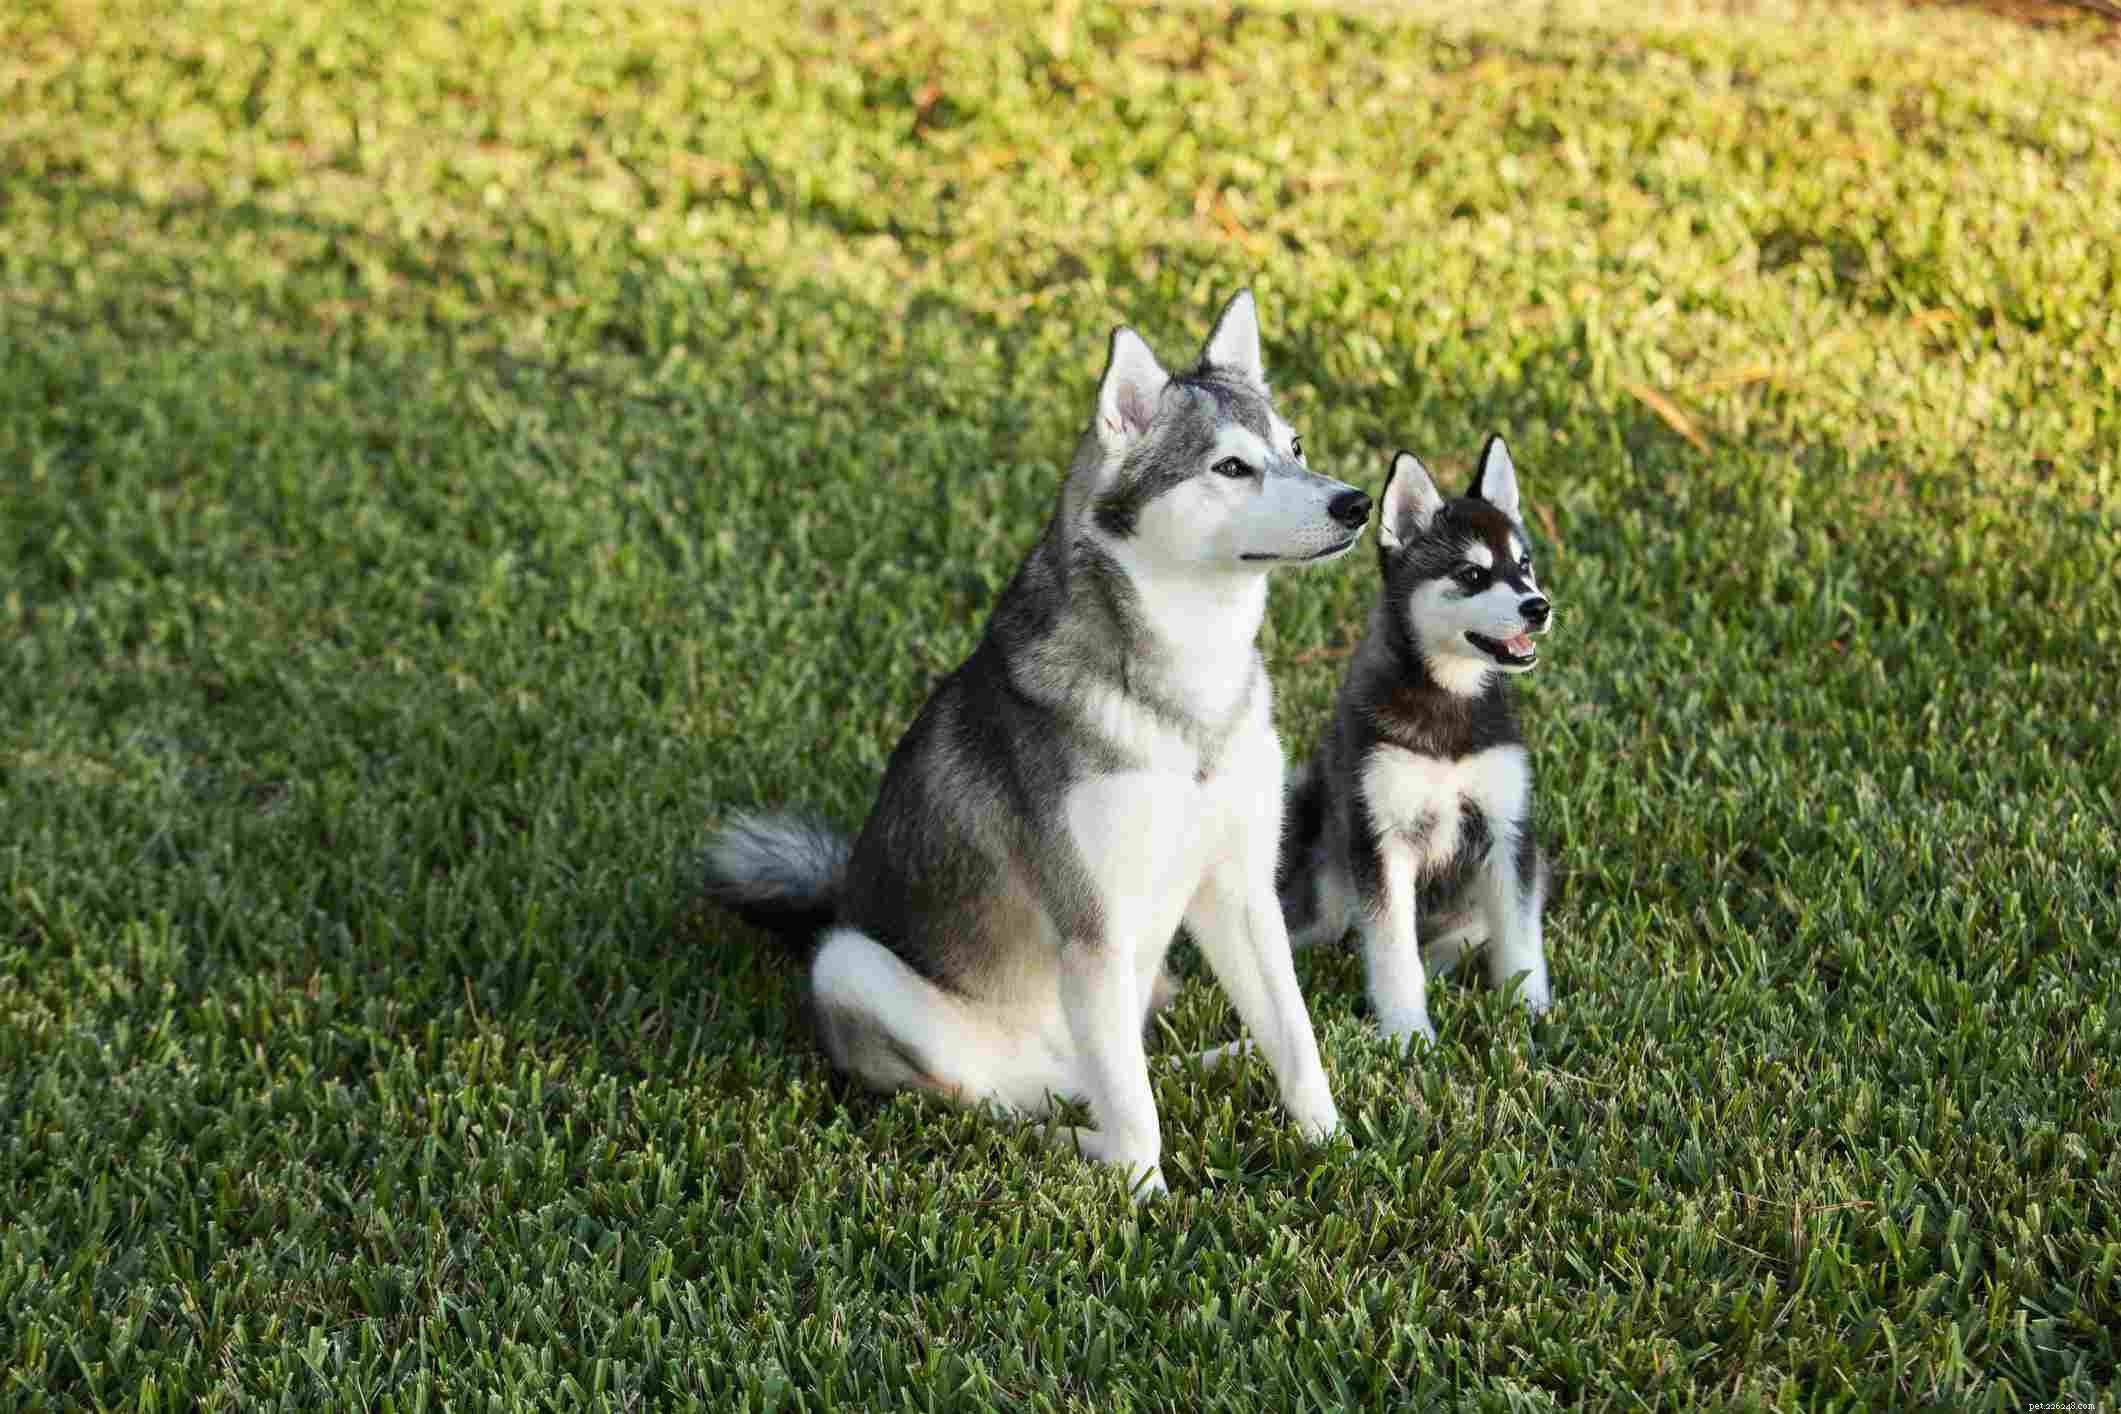 Alaskan Klee Kai :caractéristiques et soins de la race de chien